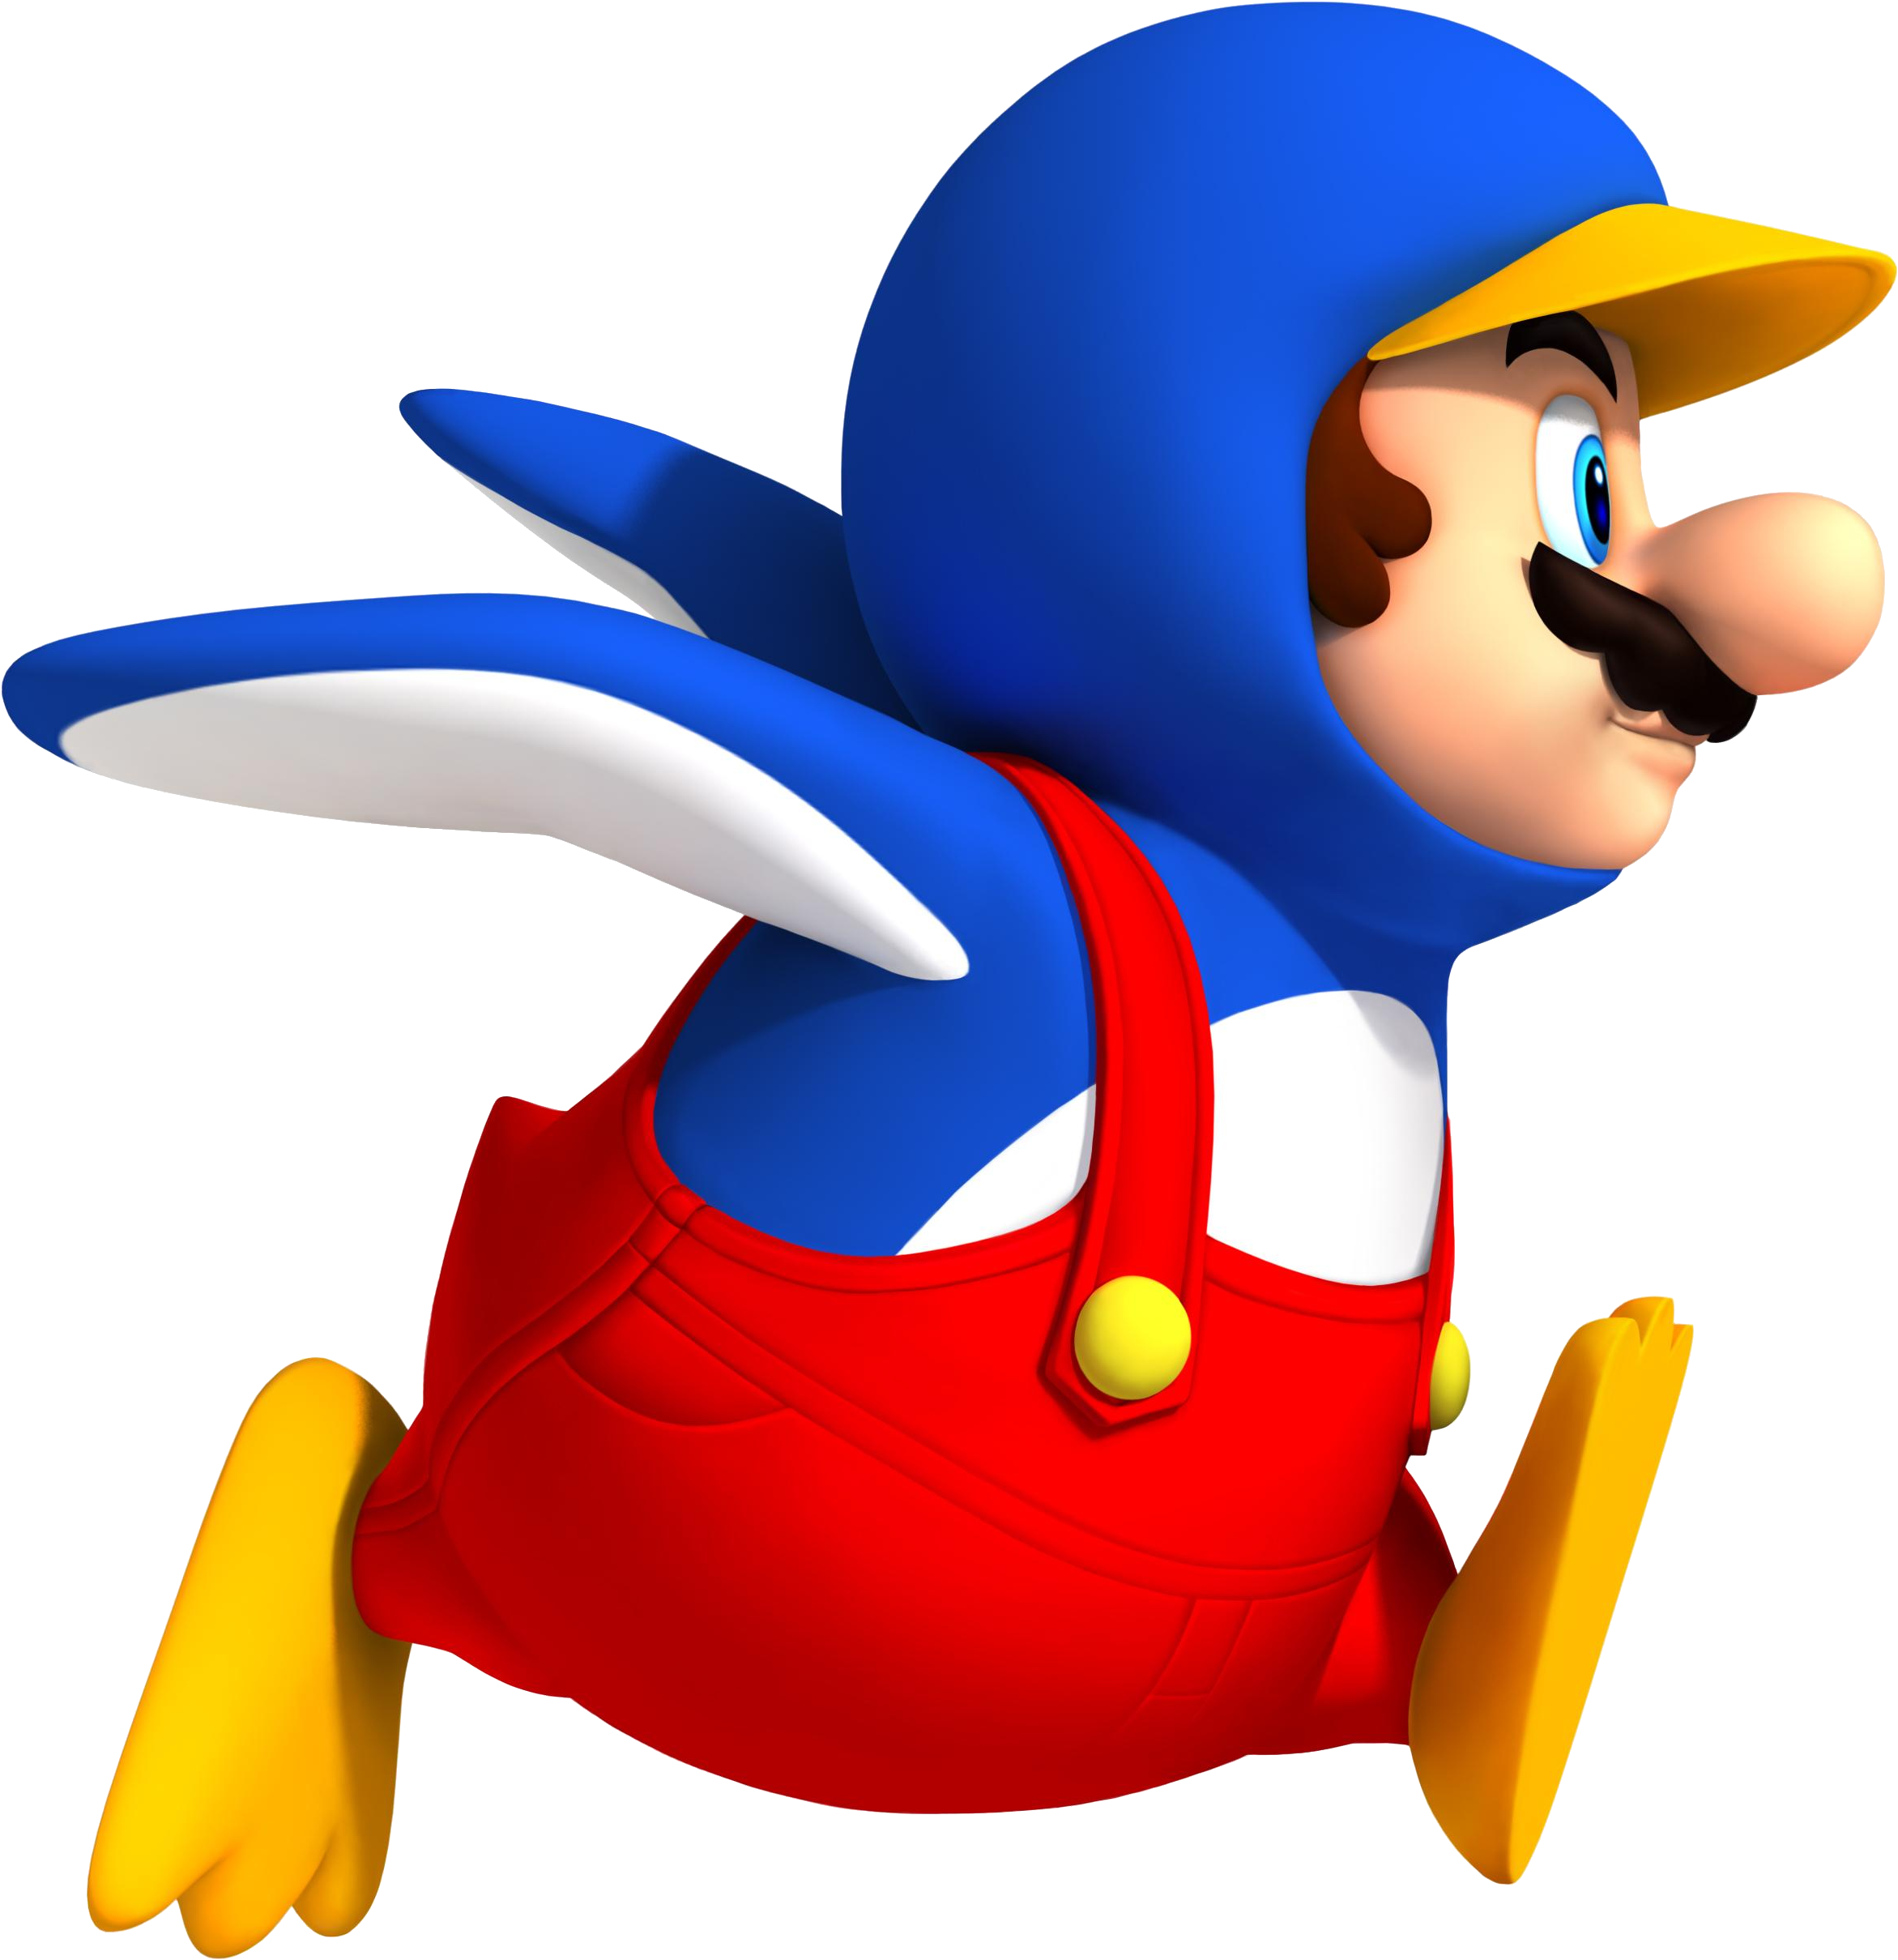 Filensmbw Penguin Mario Artworkpng Super Mario Wiki The Mario Encyclopedia 8060